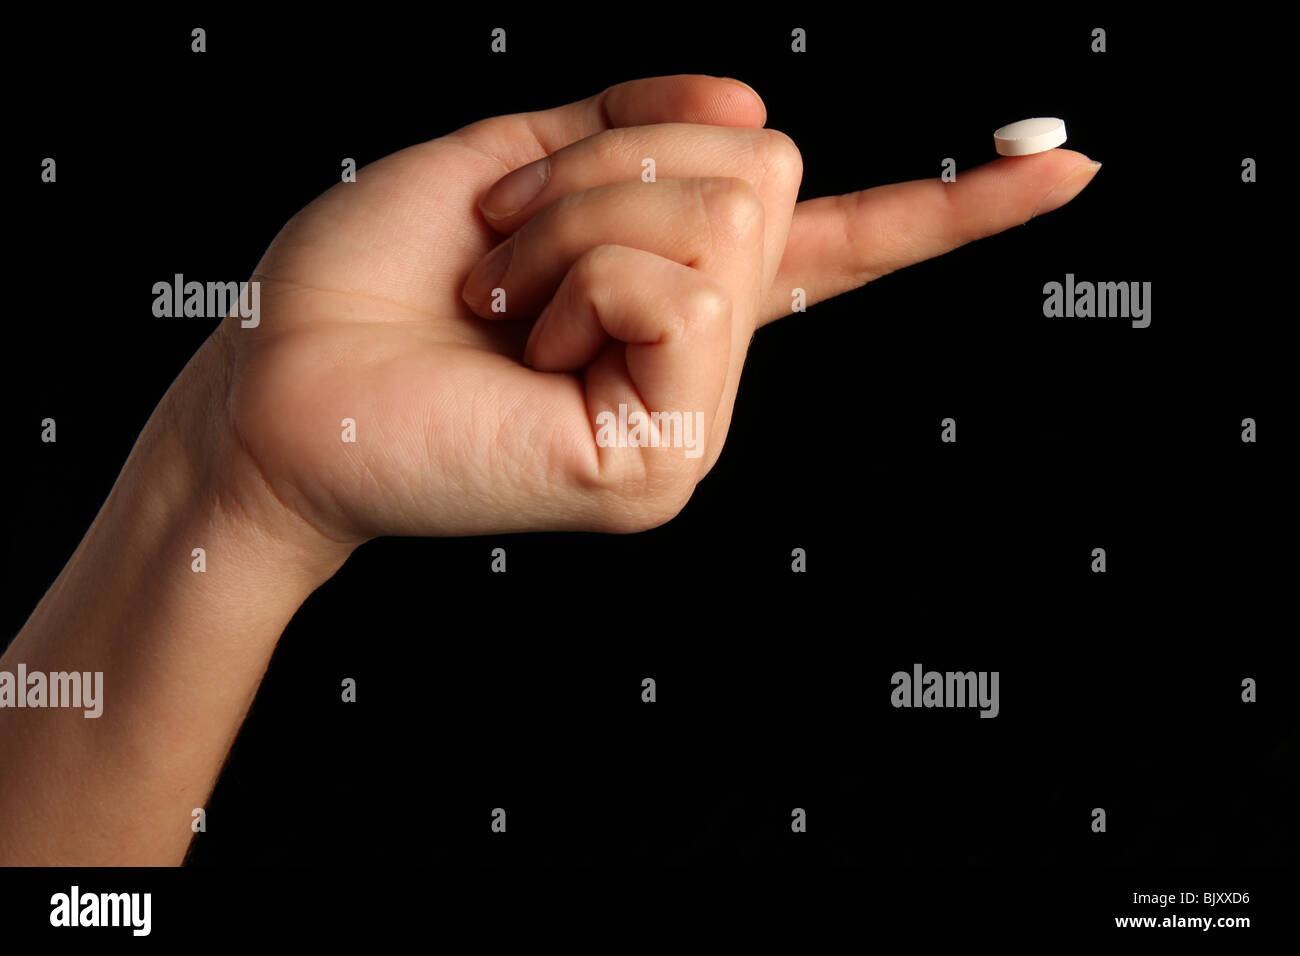 Una mano femenina sosteniendo una pequeña pastilla blanca entre los dedos Foto de stock